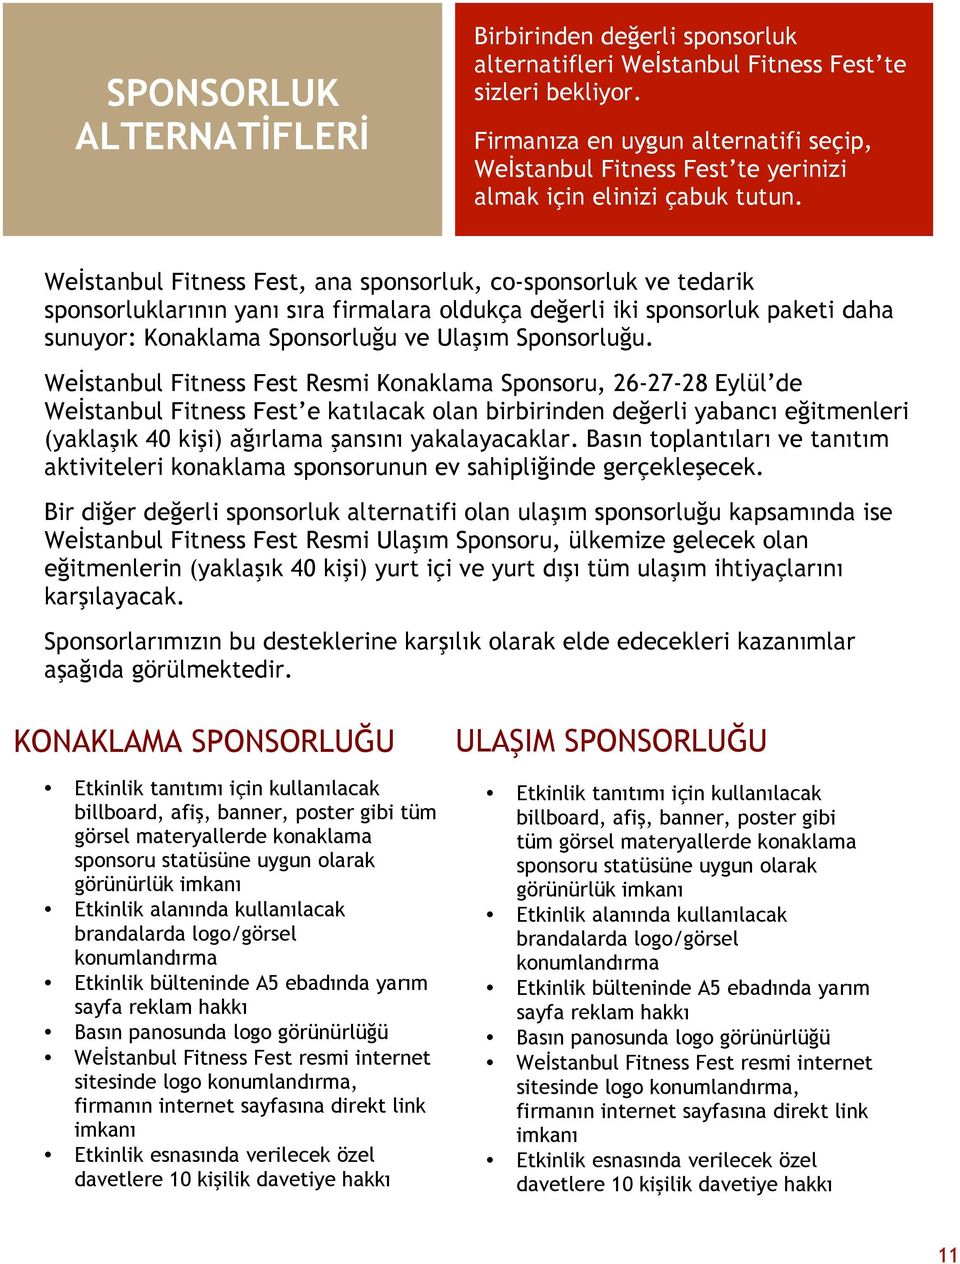 Weİstanbul Fitness Fest, ana sponsorluk, co-sponsorluk ve tedarik sponsorluklarının yanı sıra firmalara oldukça değerli iki sponsorluk paketi daha sunuyor: Konaklama Sponsorluğu ve Ulaşım Sponsorluğu.